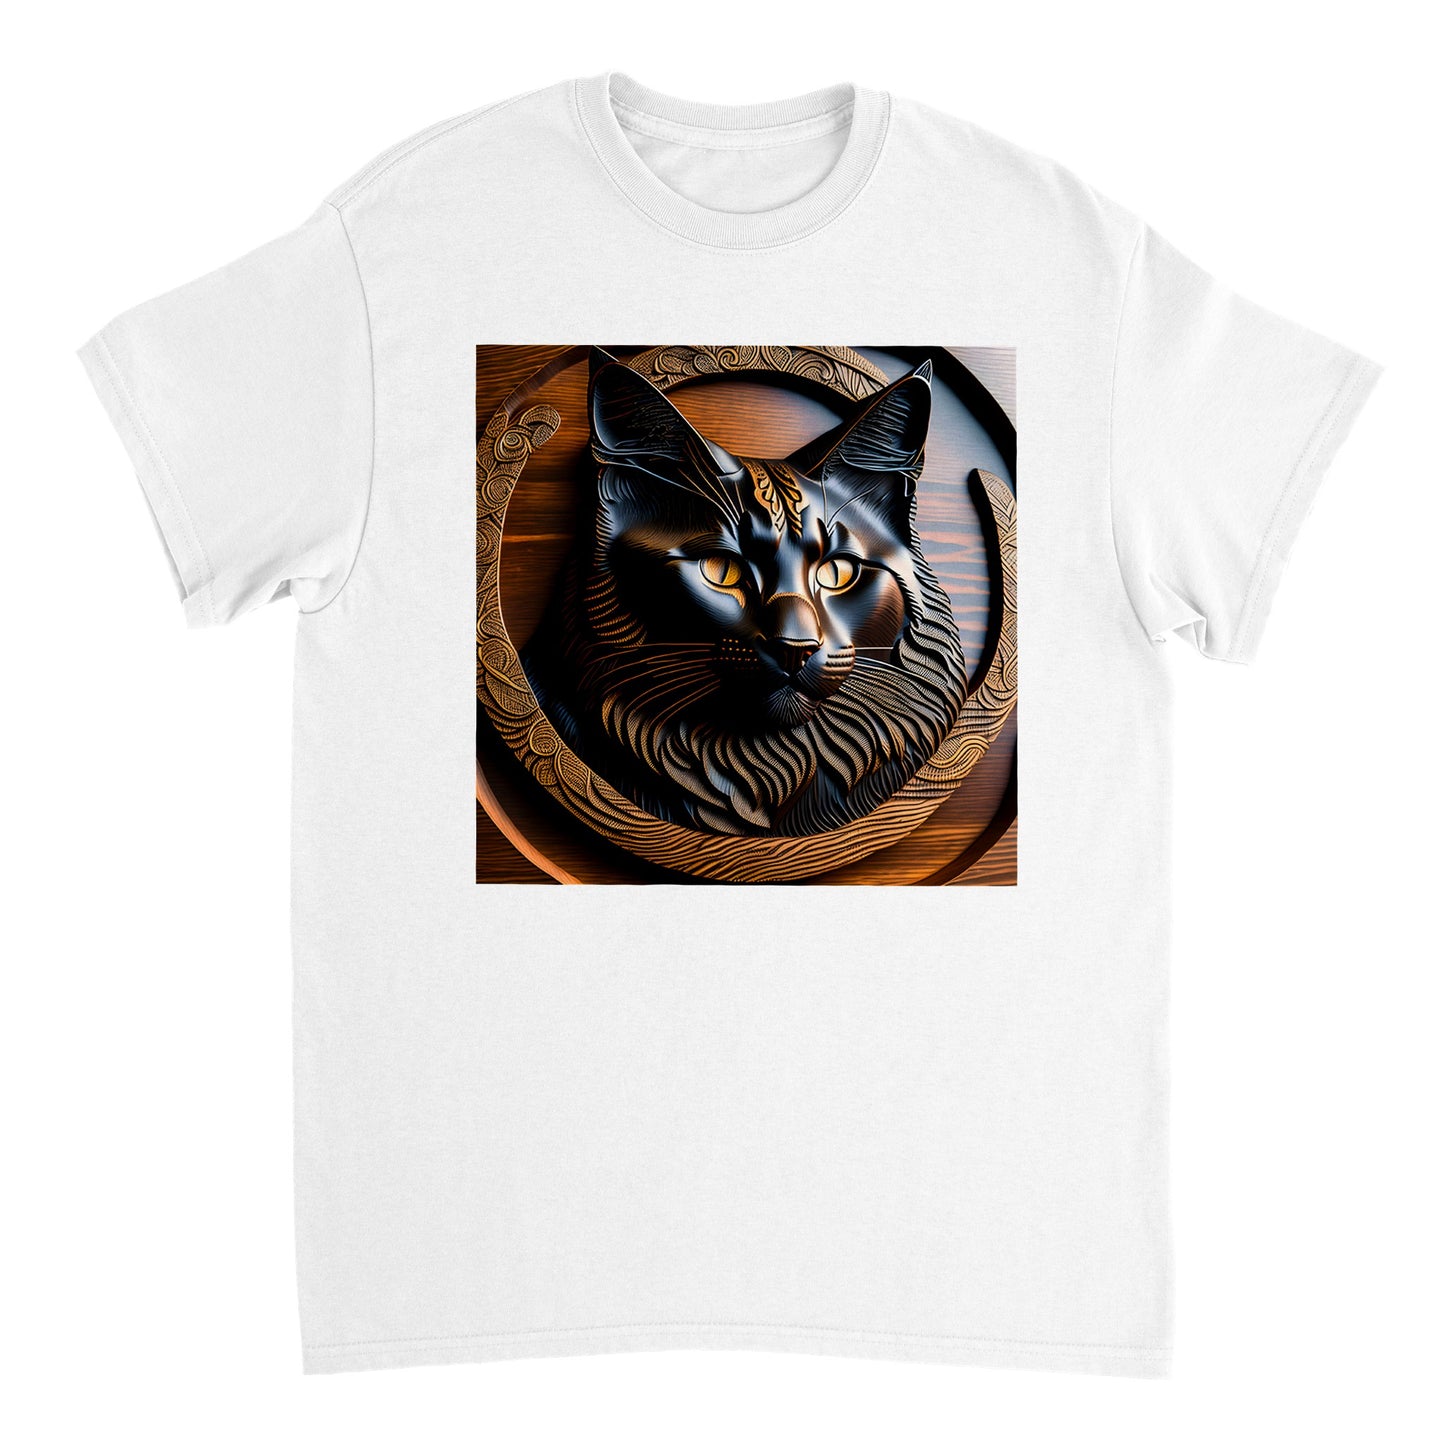 3D Wooden Animal Art - Heavyweight Unisex Crewneck T-shirt 47